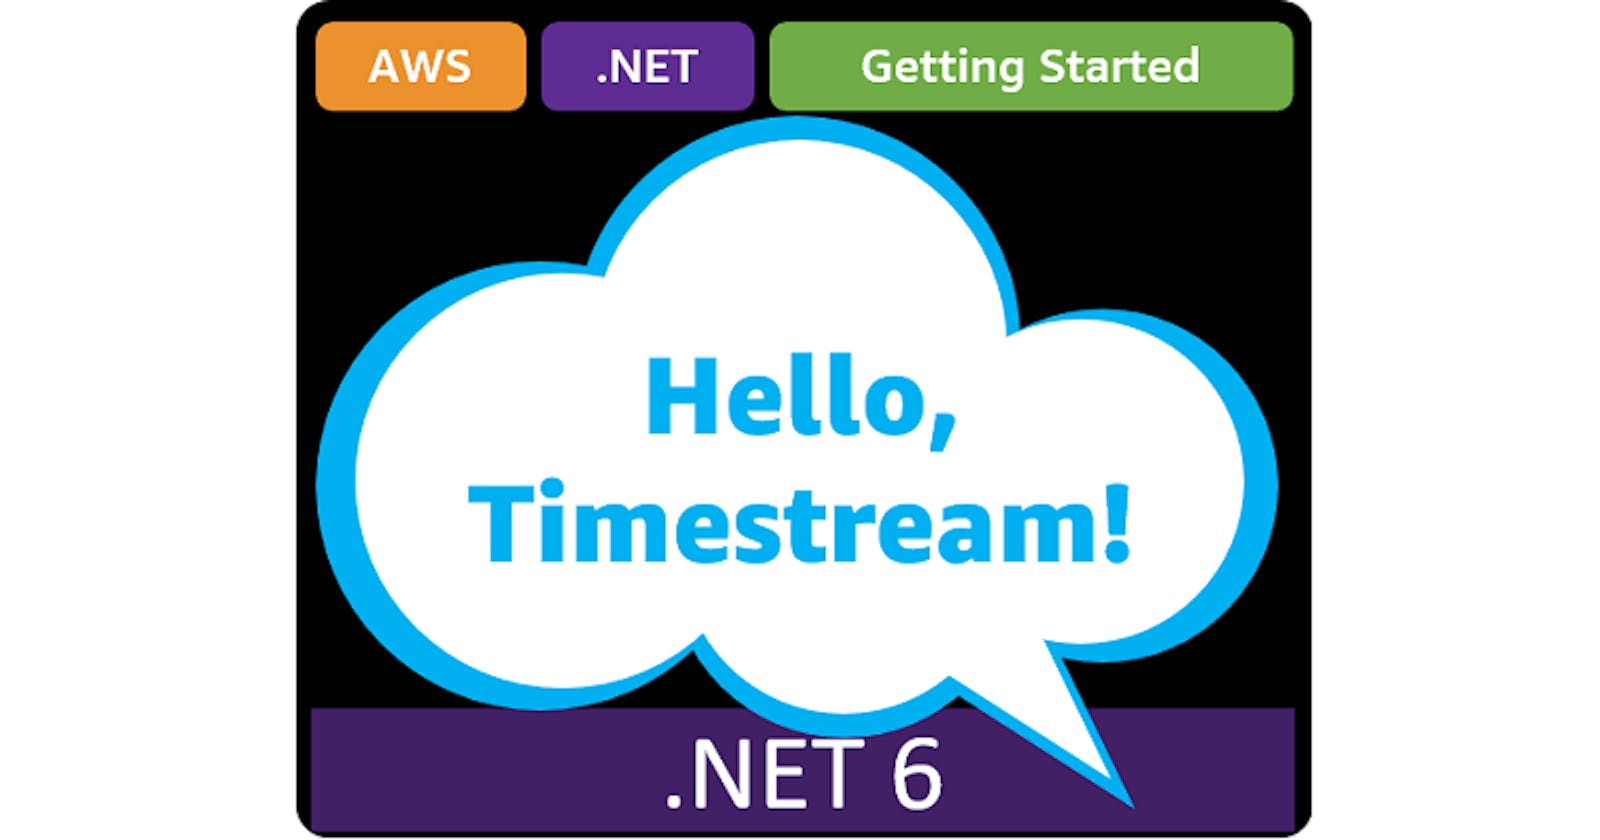 Hello, Timestream!